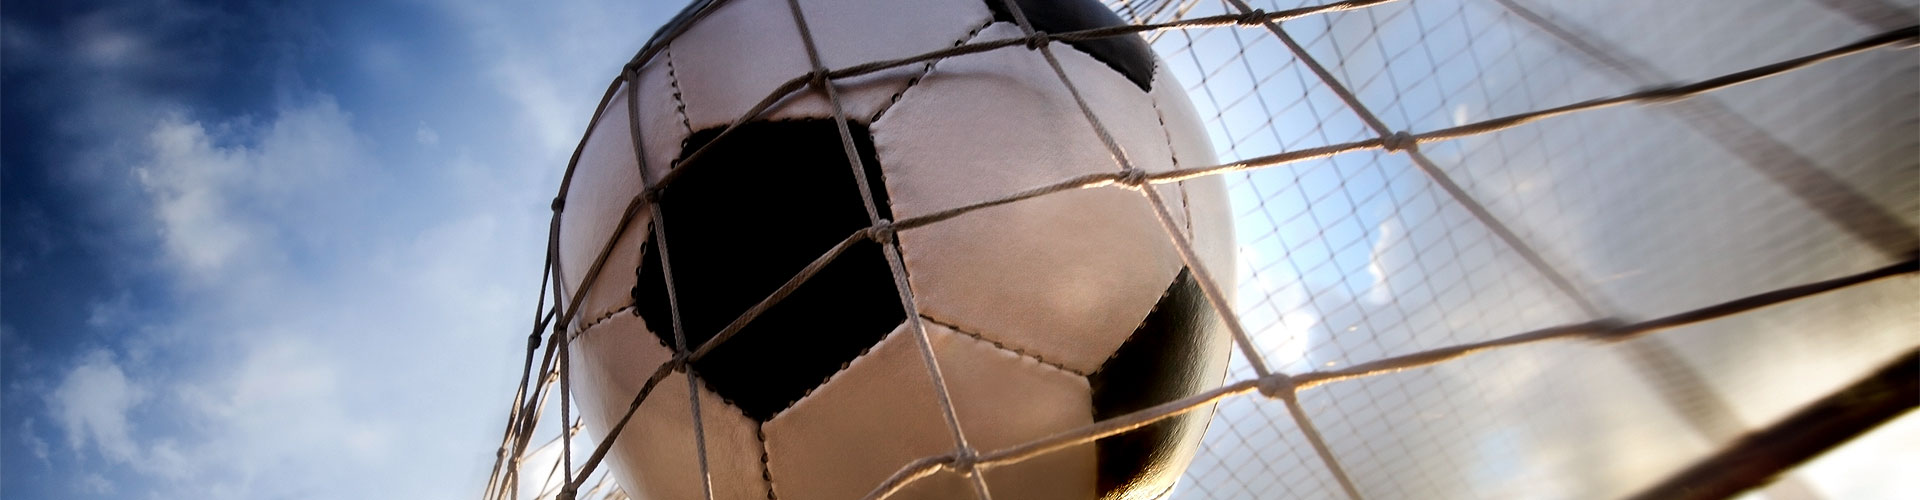 Ver la Eurocopa 2020 de fútbol en vivo en Artázcoz
        
        


	    
           
           


          
          
          
